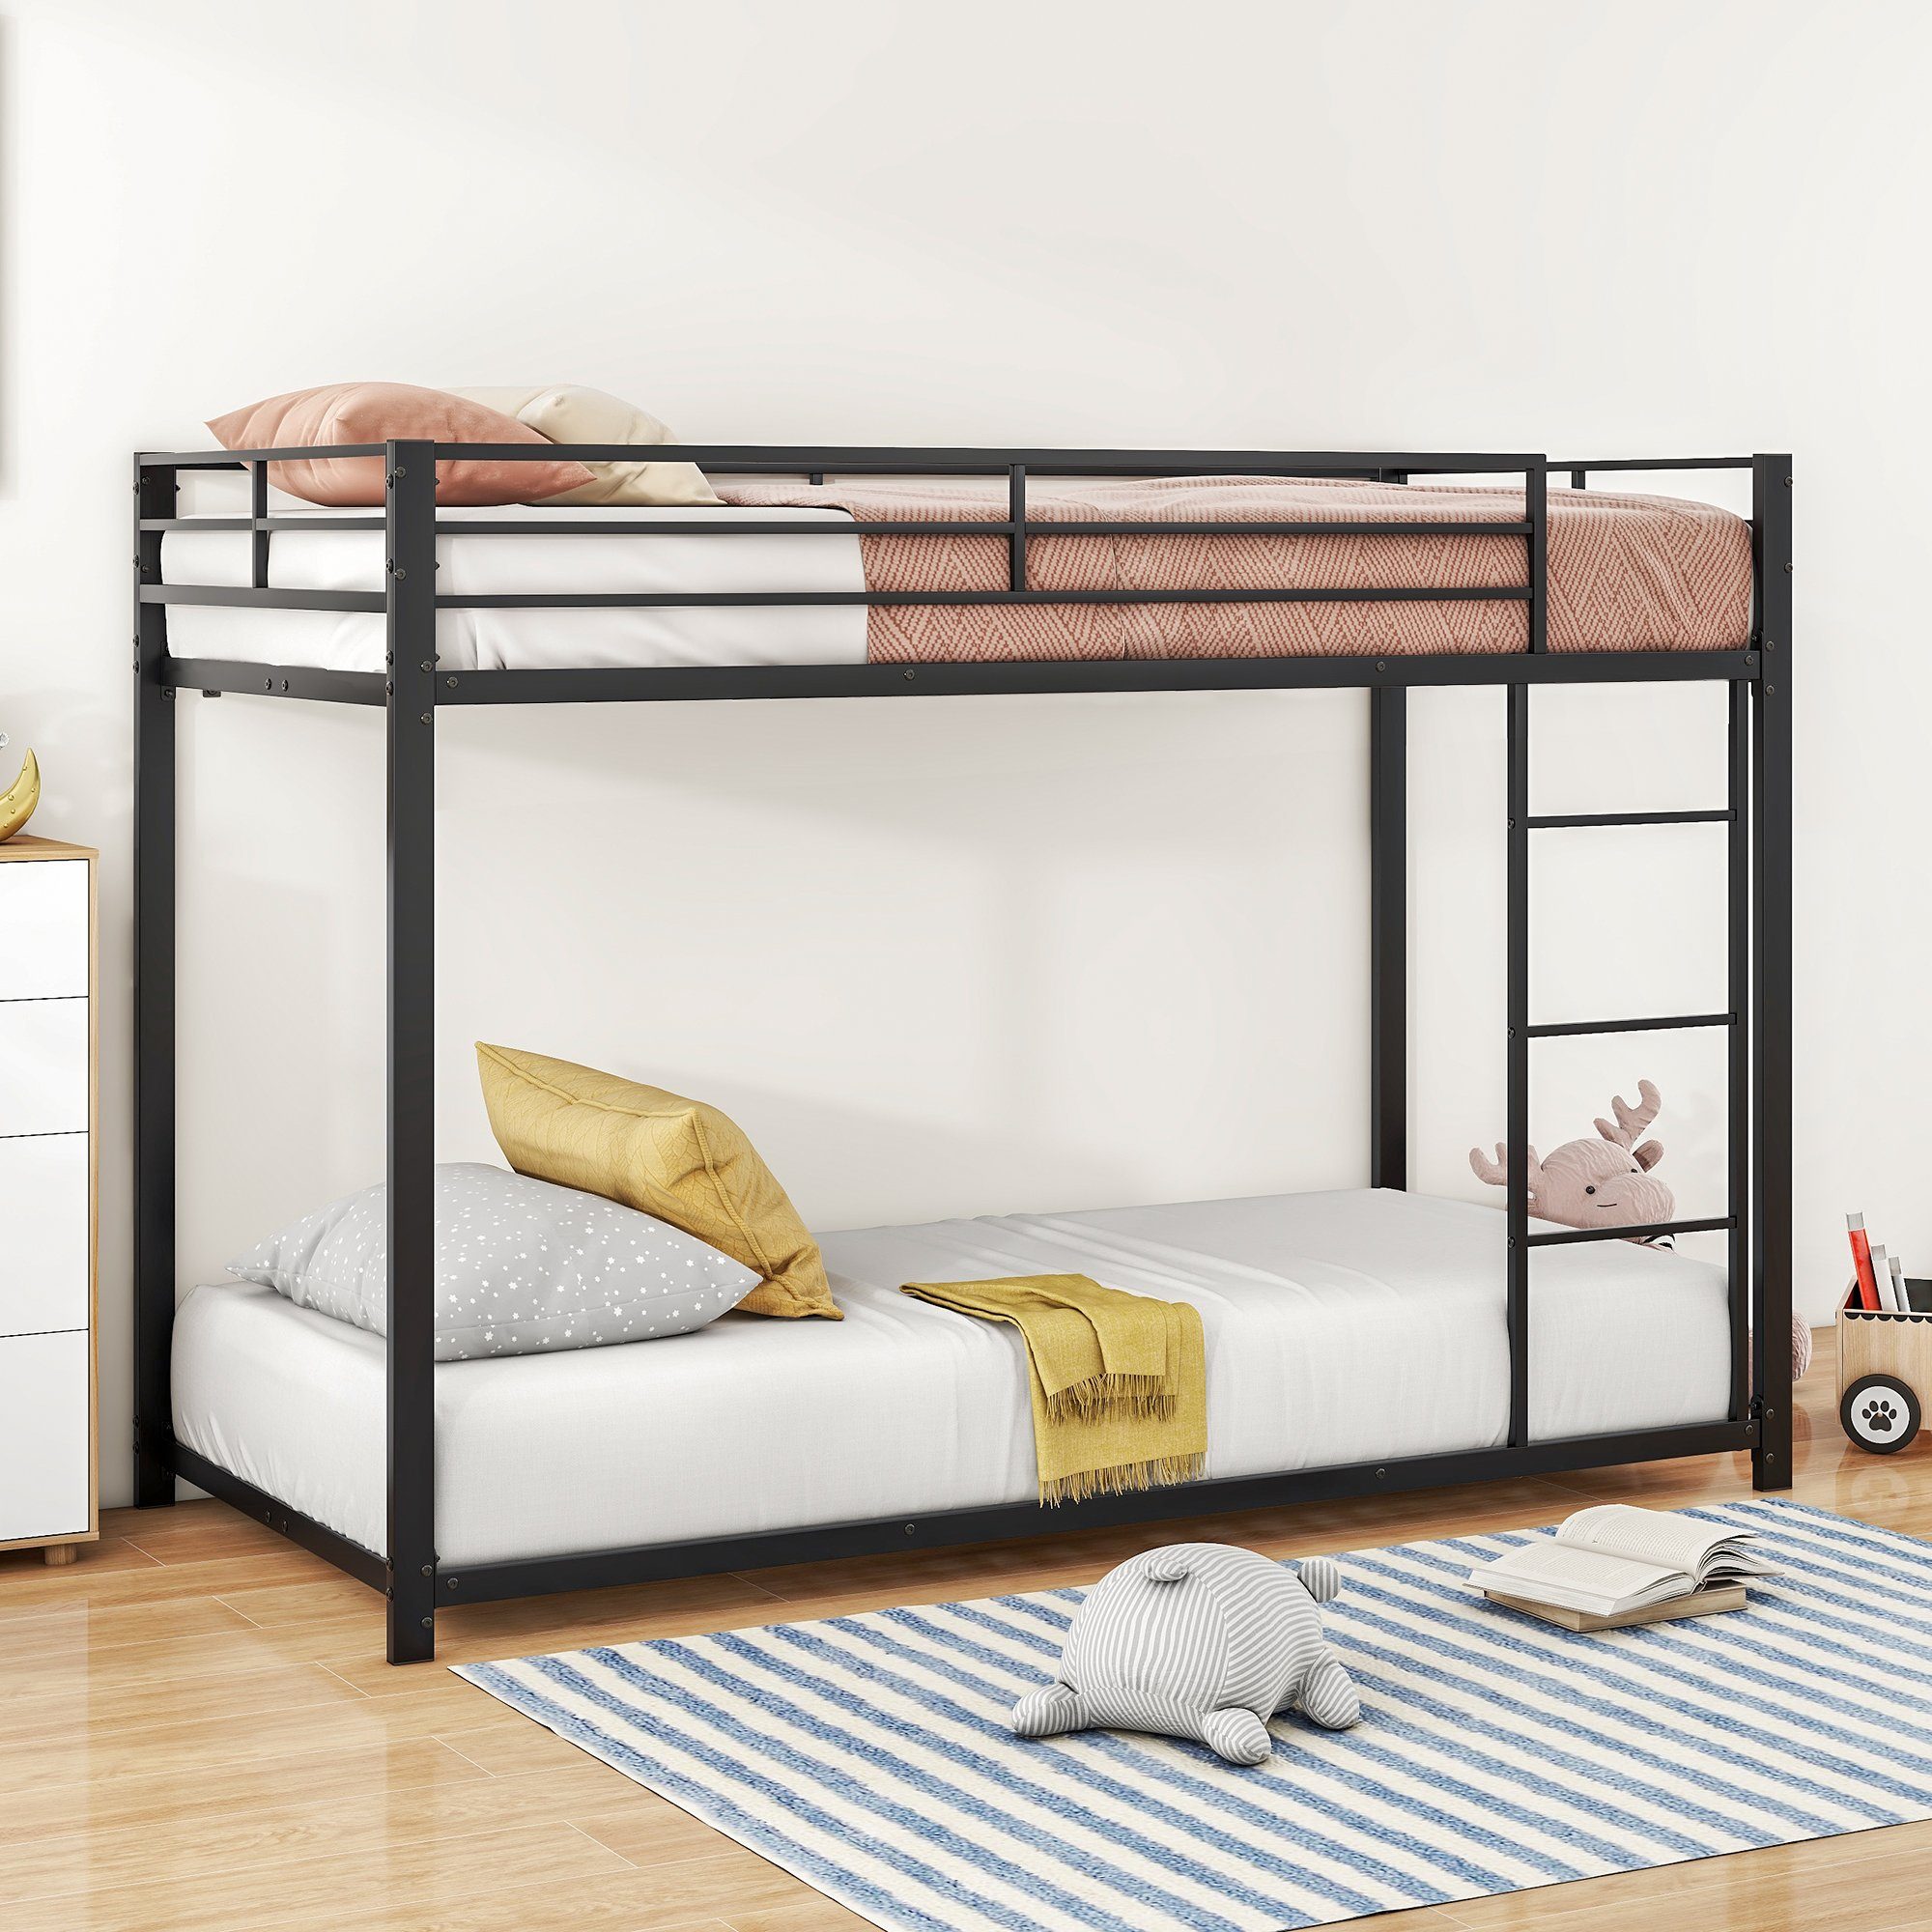 OKWISH Etagenbett Kinderbetten Eisenbetten Funktionsbett Bett (90*200 cm, Eisenetagenbetten in klassischer Form), ohne Matratze schwarz